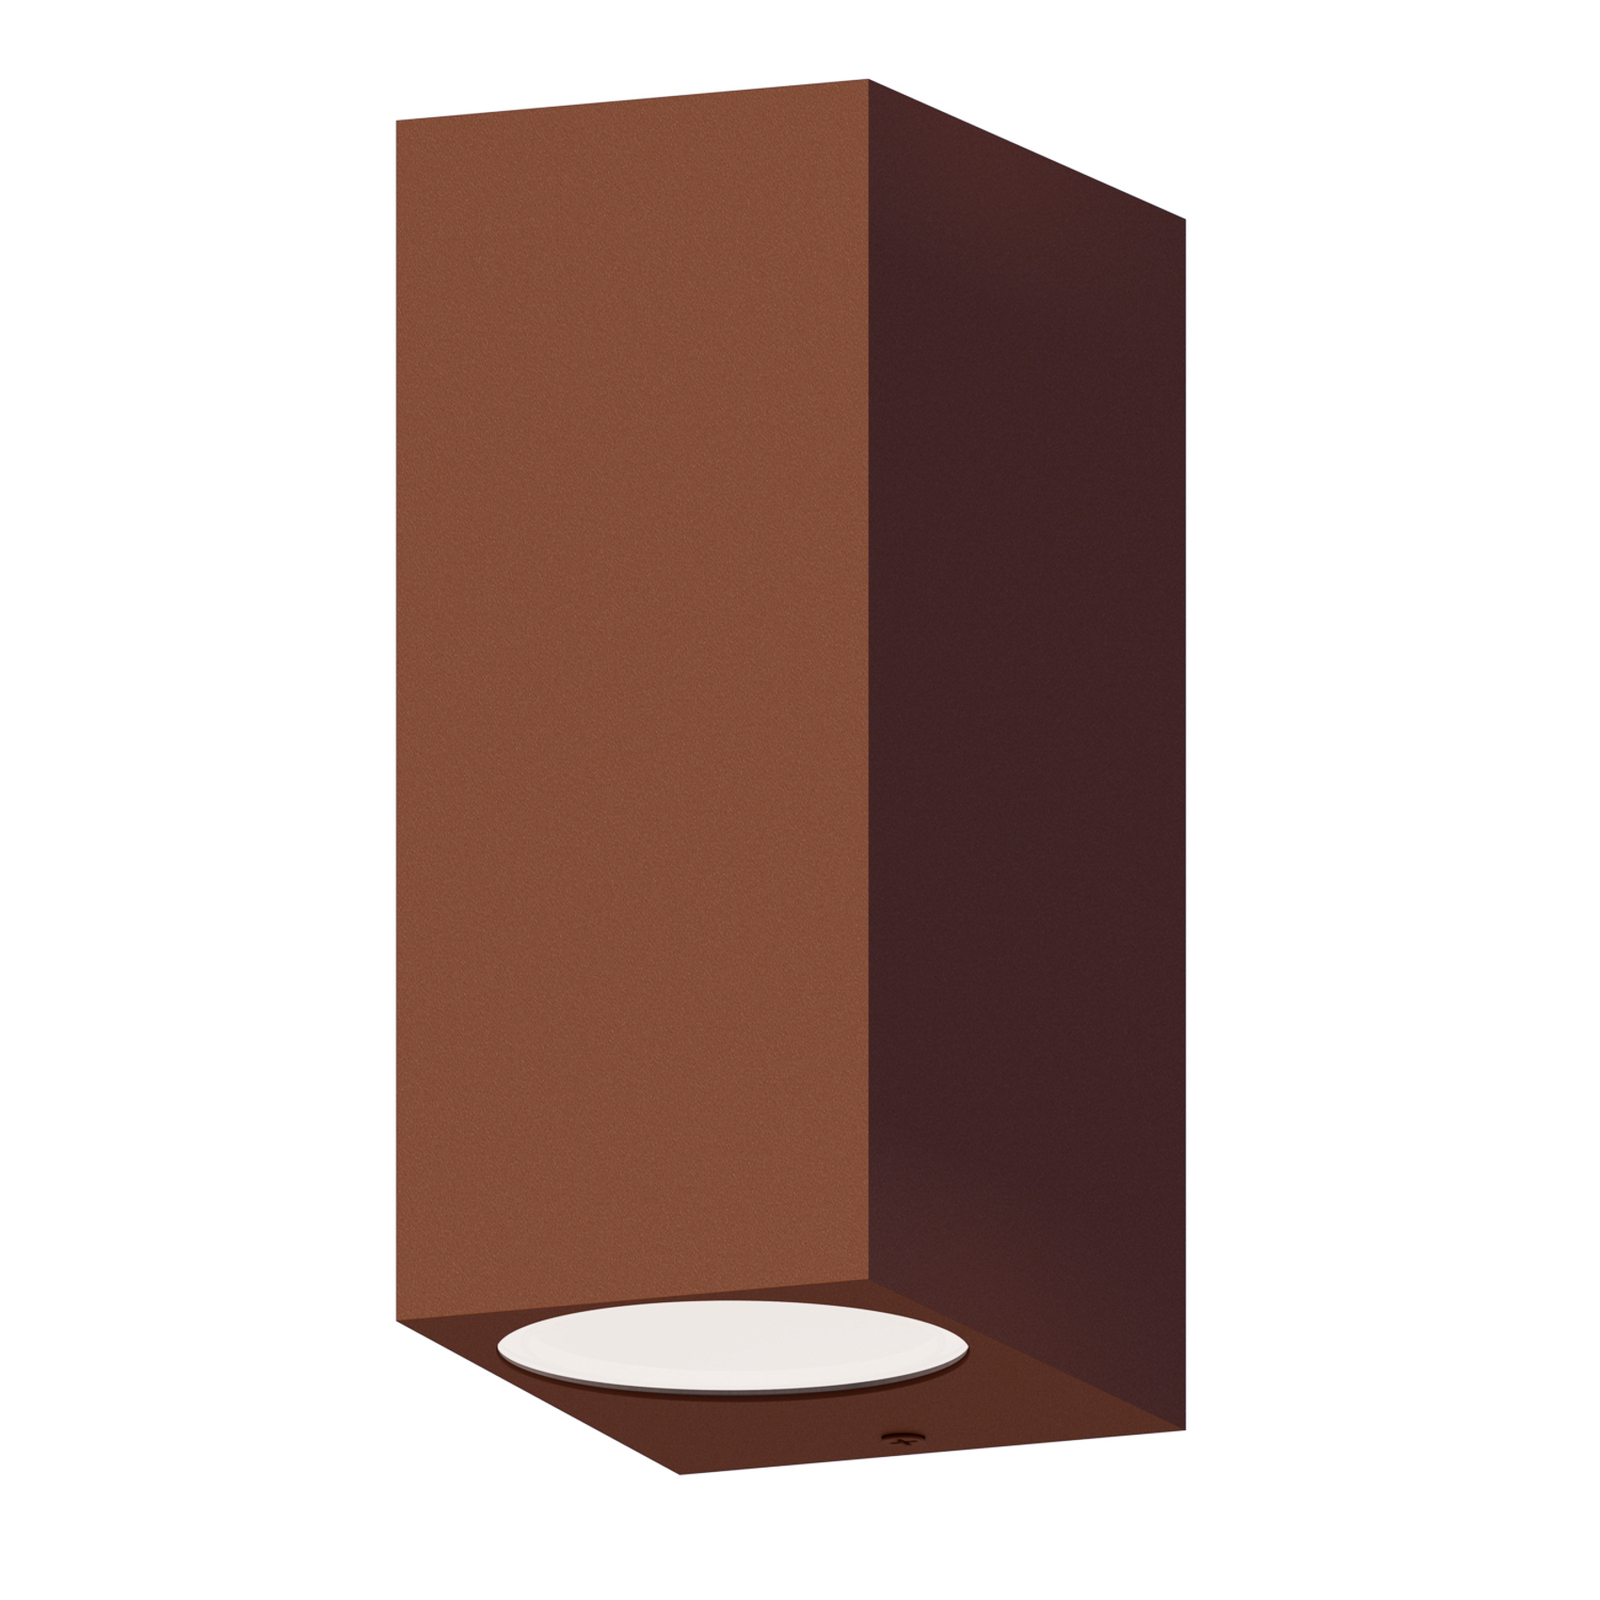 Calex outdoor wall light GU10, up/down, height 15 cm, rust brown